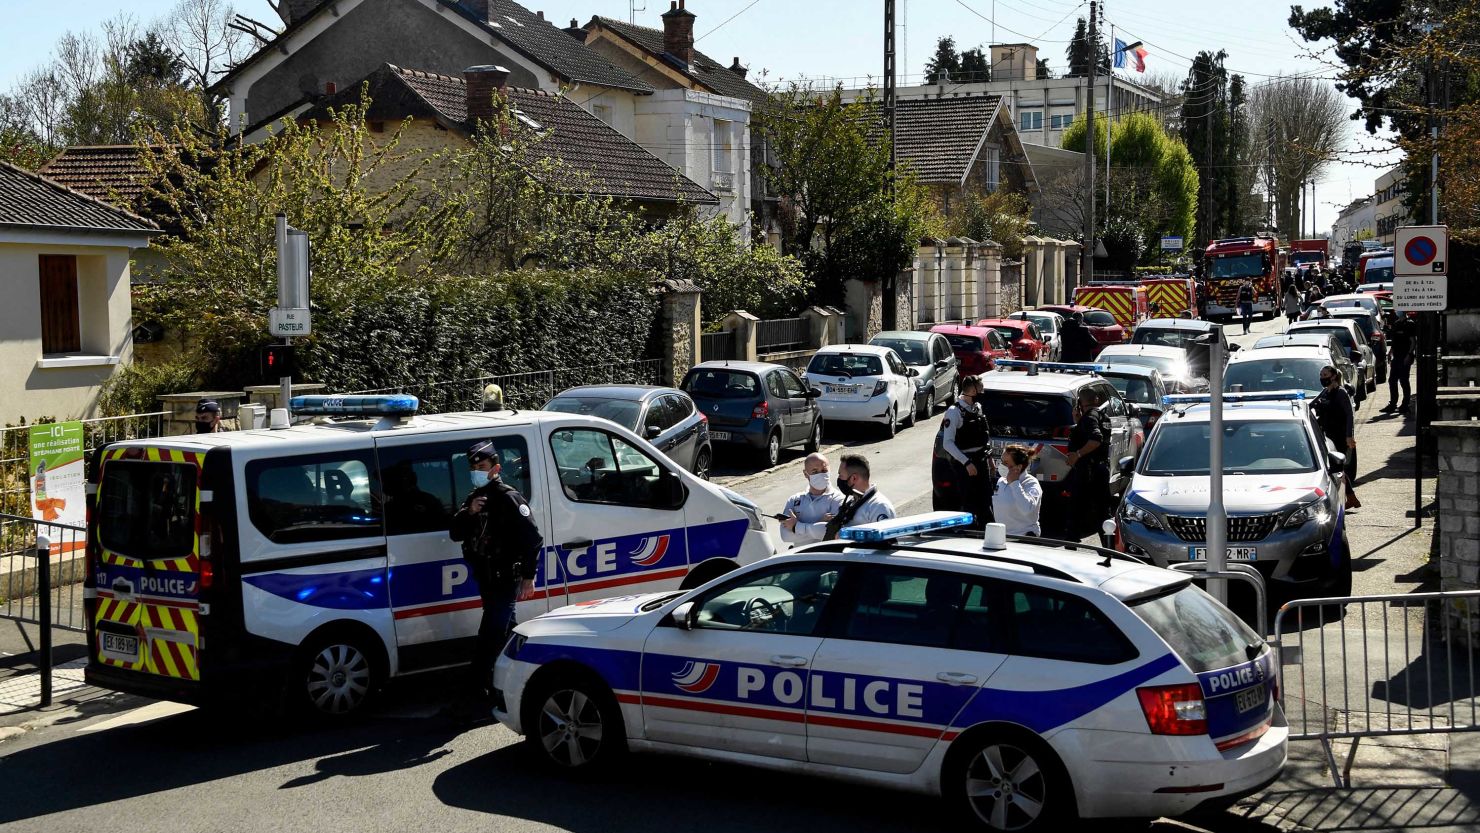 La policía de Francia bloquea una calle cerca de la estación de policía de Rambouillet, al suroeste de París, el 23 de abril de 2021, luego de que una policía fuera apuñalada.